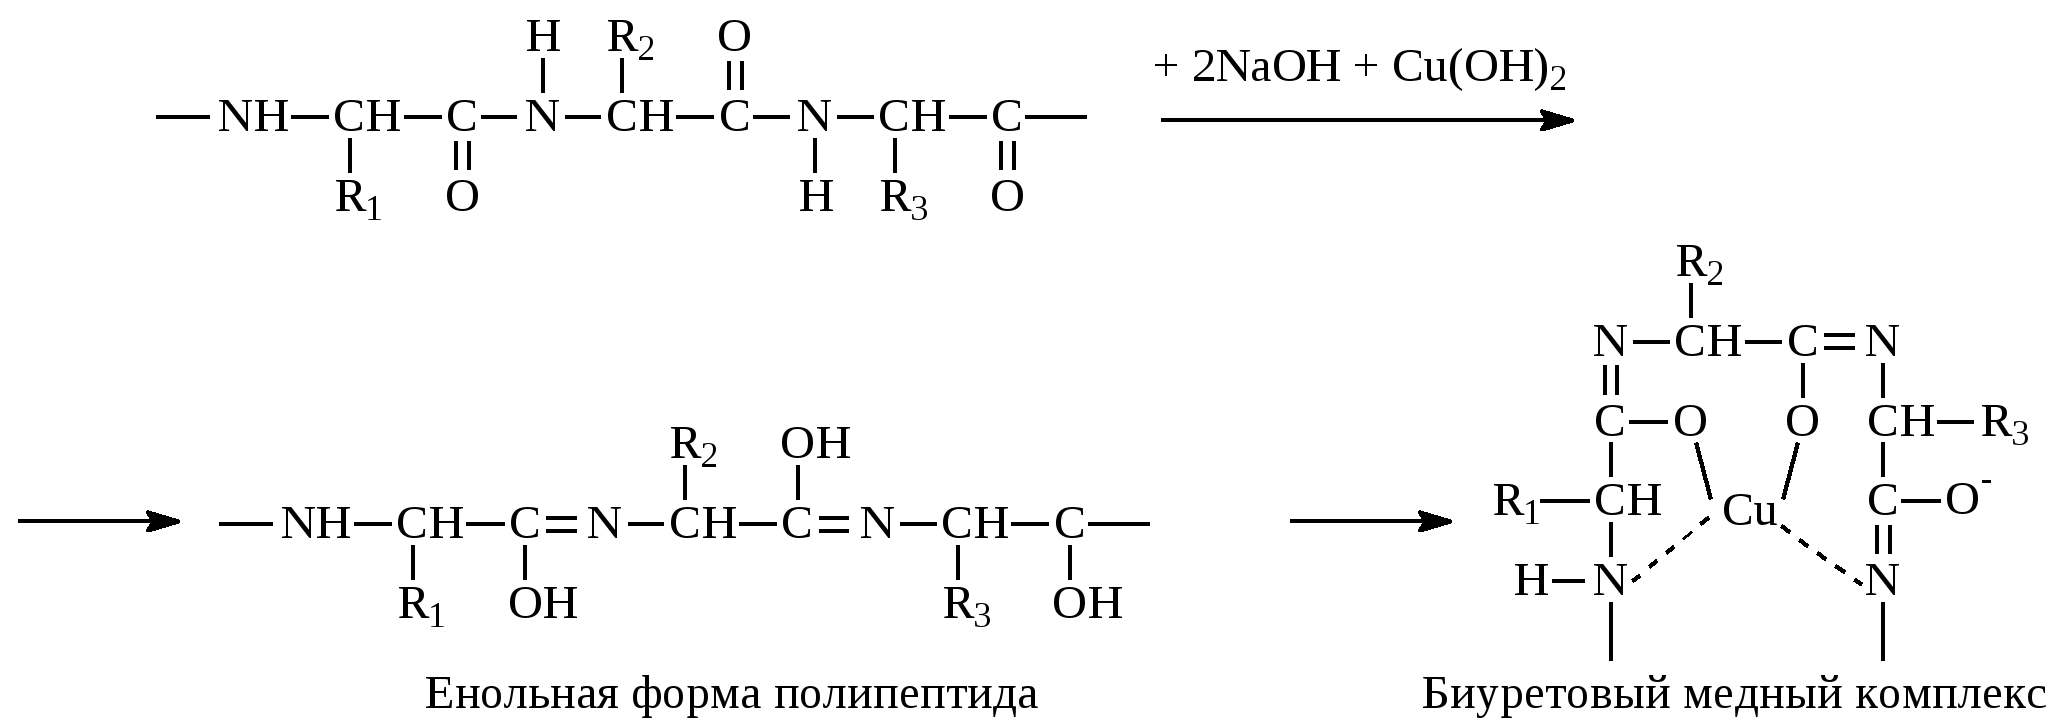 Глицин полипептид. Формы полипептидов. Енольная форма. Реакция глицина с формальдегидом. Глицин и формальдегид.